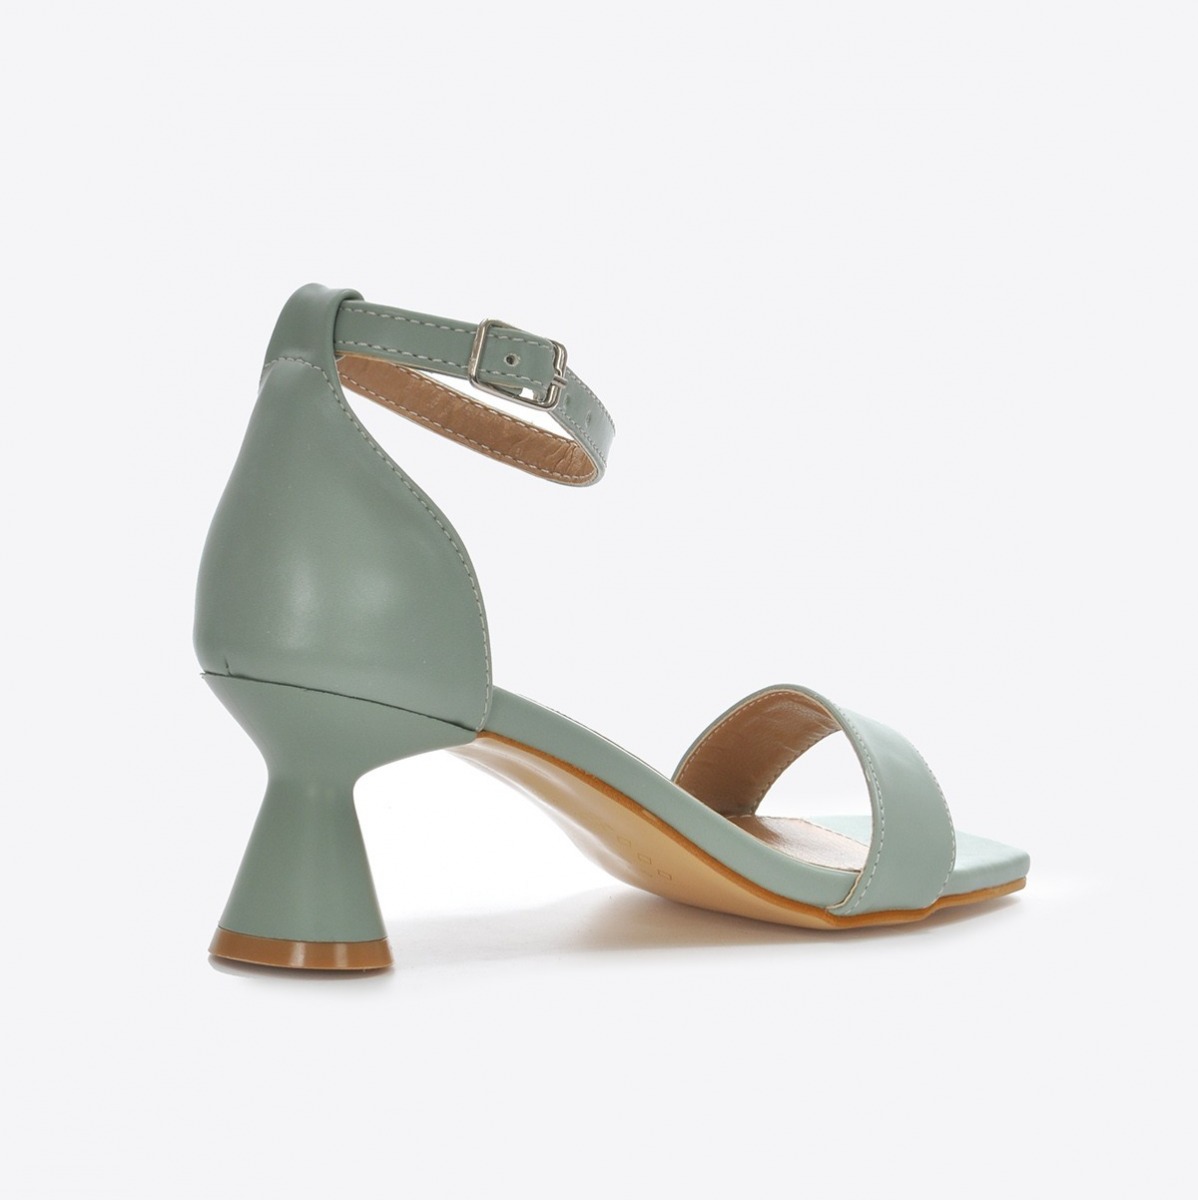 Flo Kadın  Su Yeşili Klasik Topuklu Ayakkabı VZN21-032Y. 5